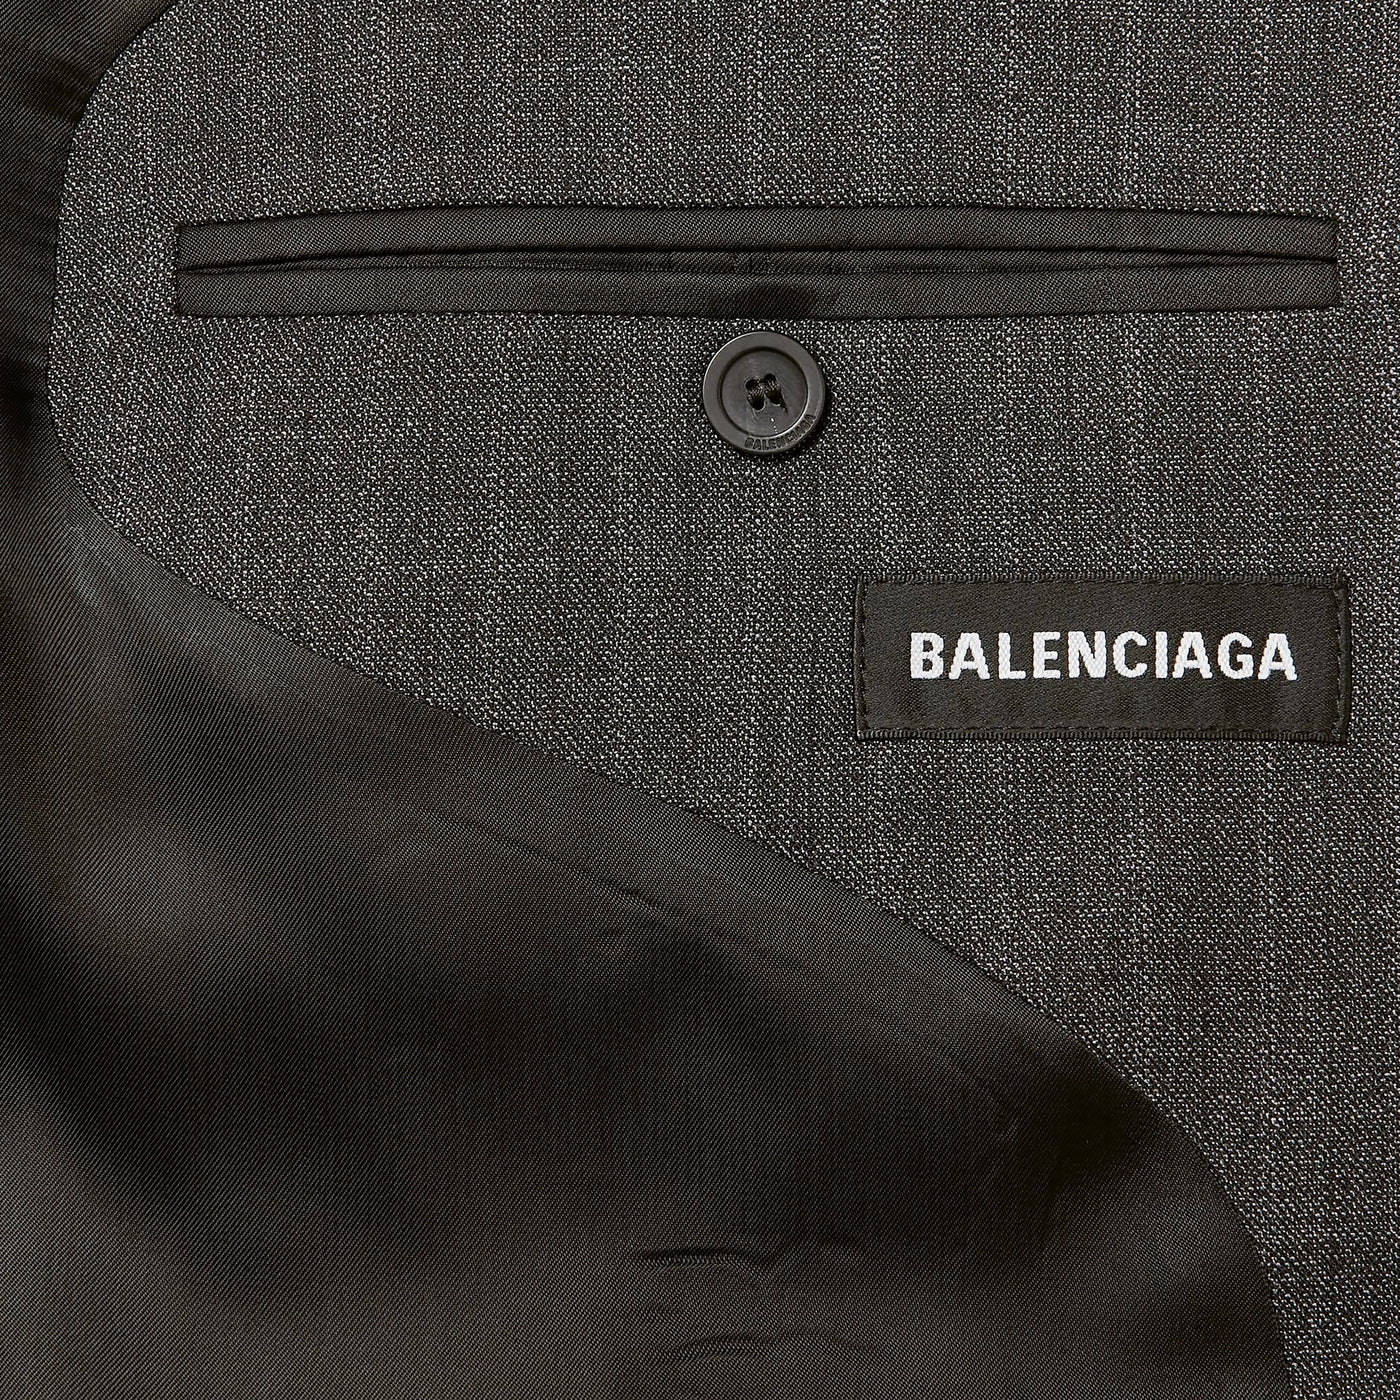 Balenciaga Checked Blazer